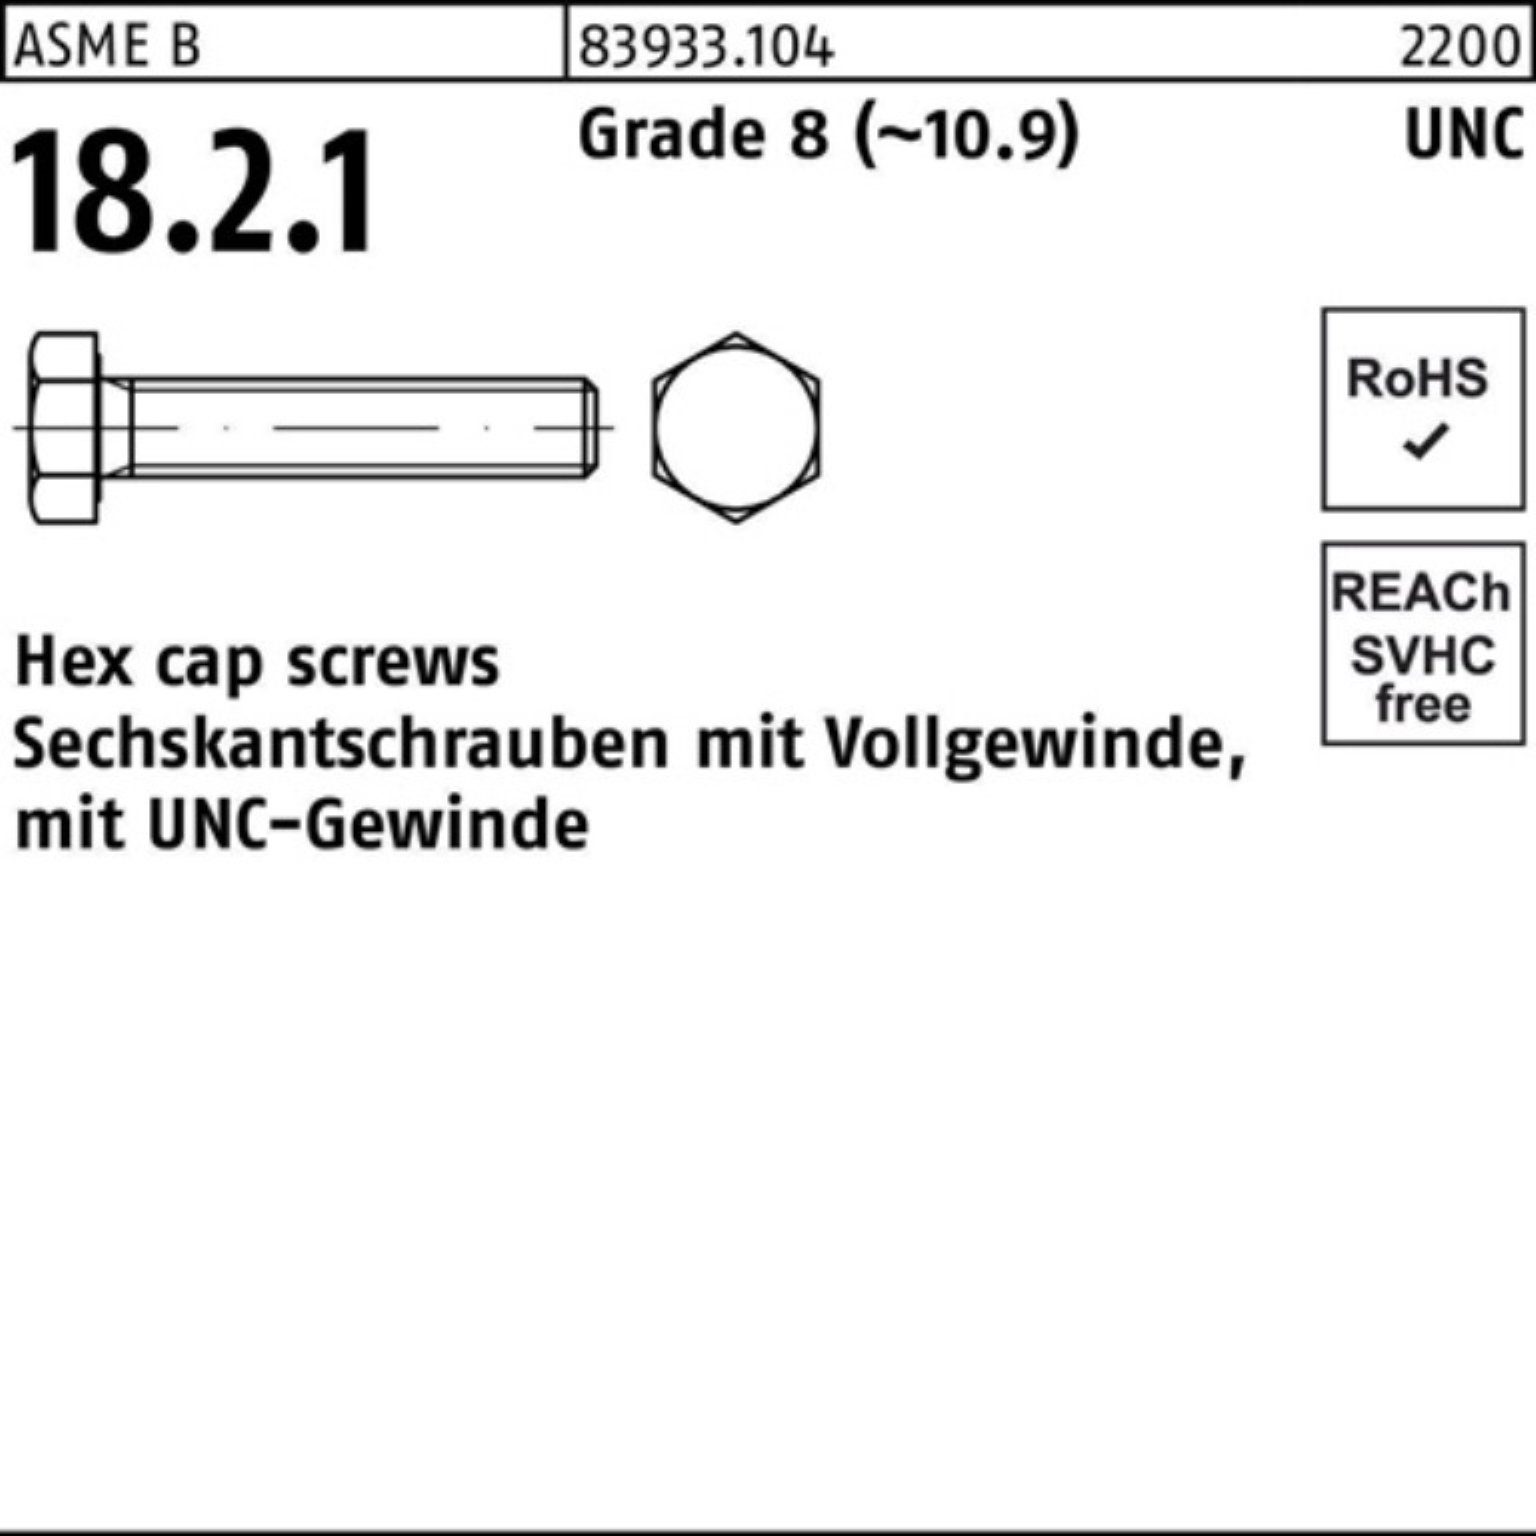 Reyher Sechskantschraube 100er Pack Sechskantschraube R 83933 UNC-Gewinde VG 1x 1 3/4 Grade 8